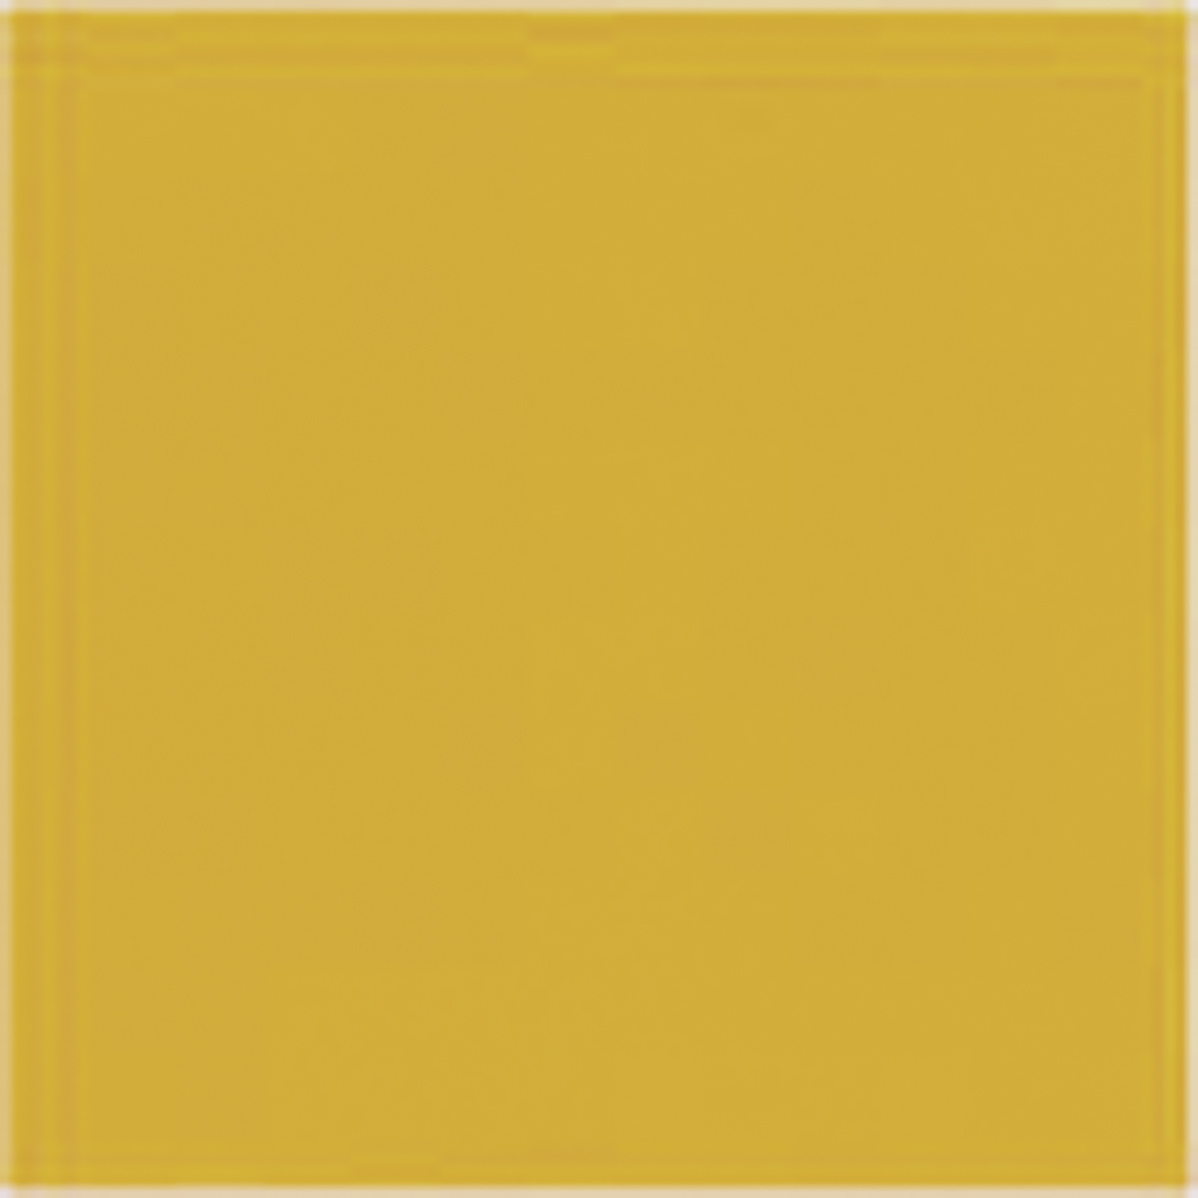 Керамическая плитка Veneto Beta Naranja, цвет жёлтый, поверхность глянцевая, квадрат, 200x200